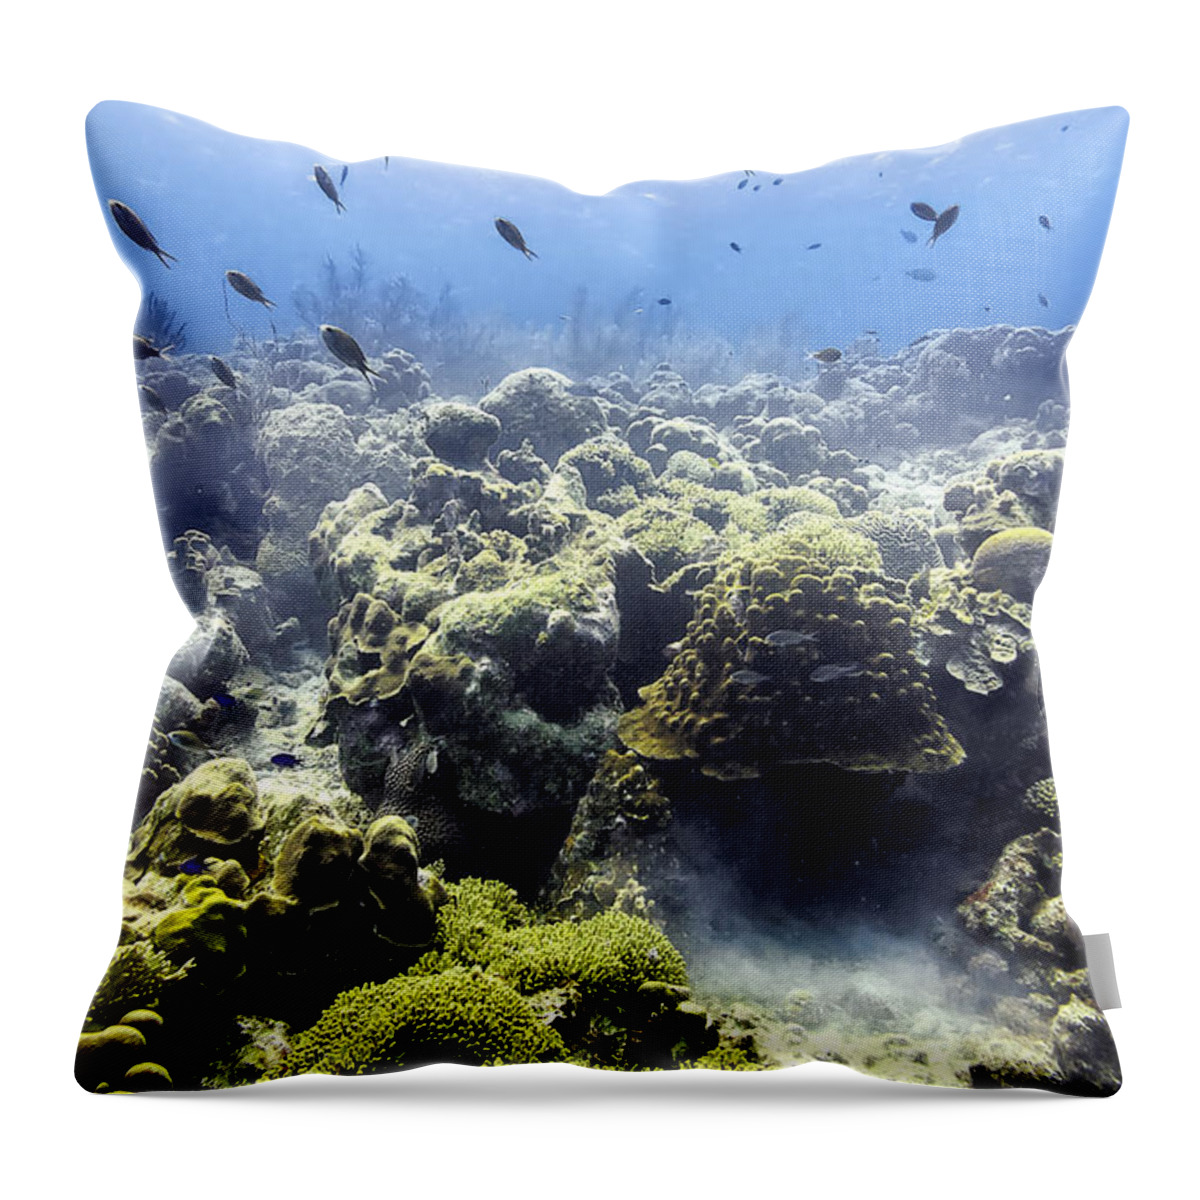 Ocean Light Throw Pillow featuring the photograph Ocean Light II by Perla Copernik